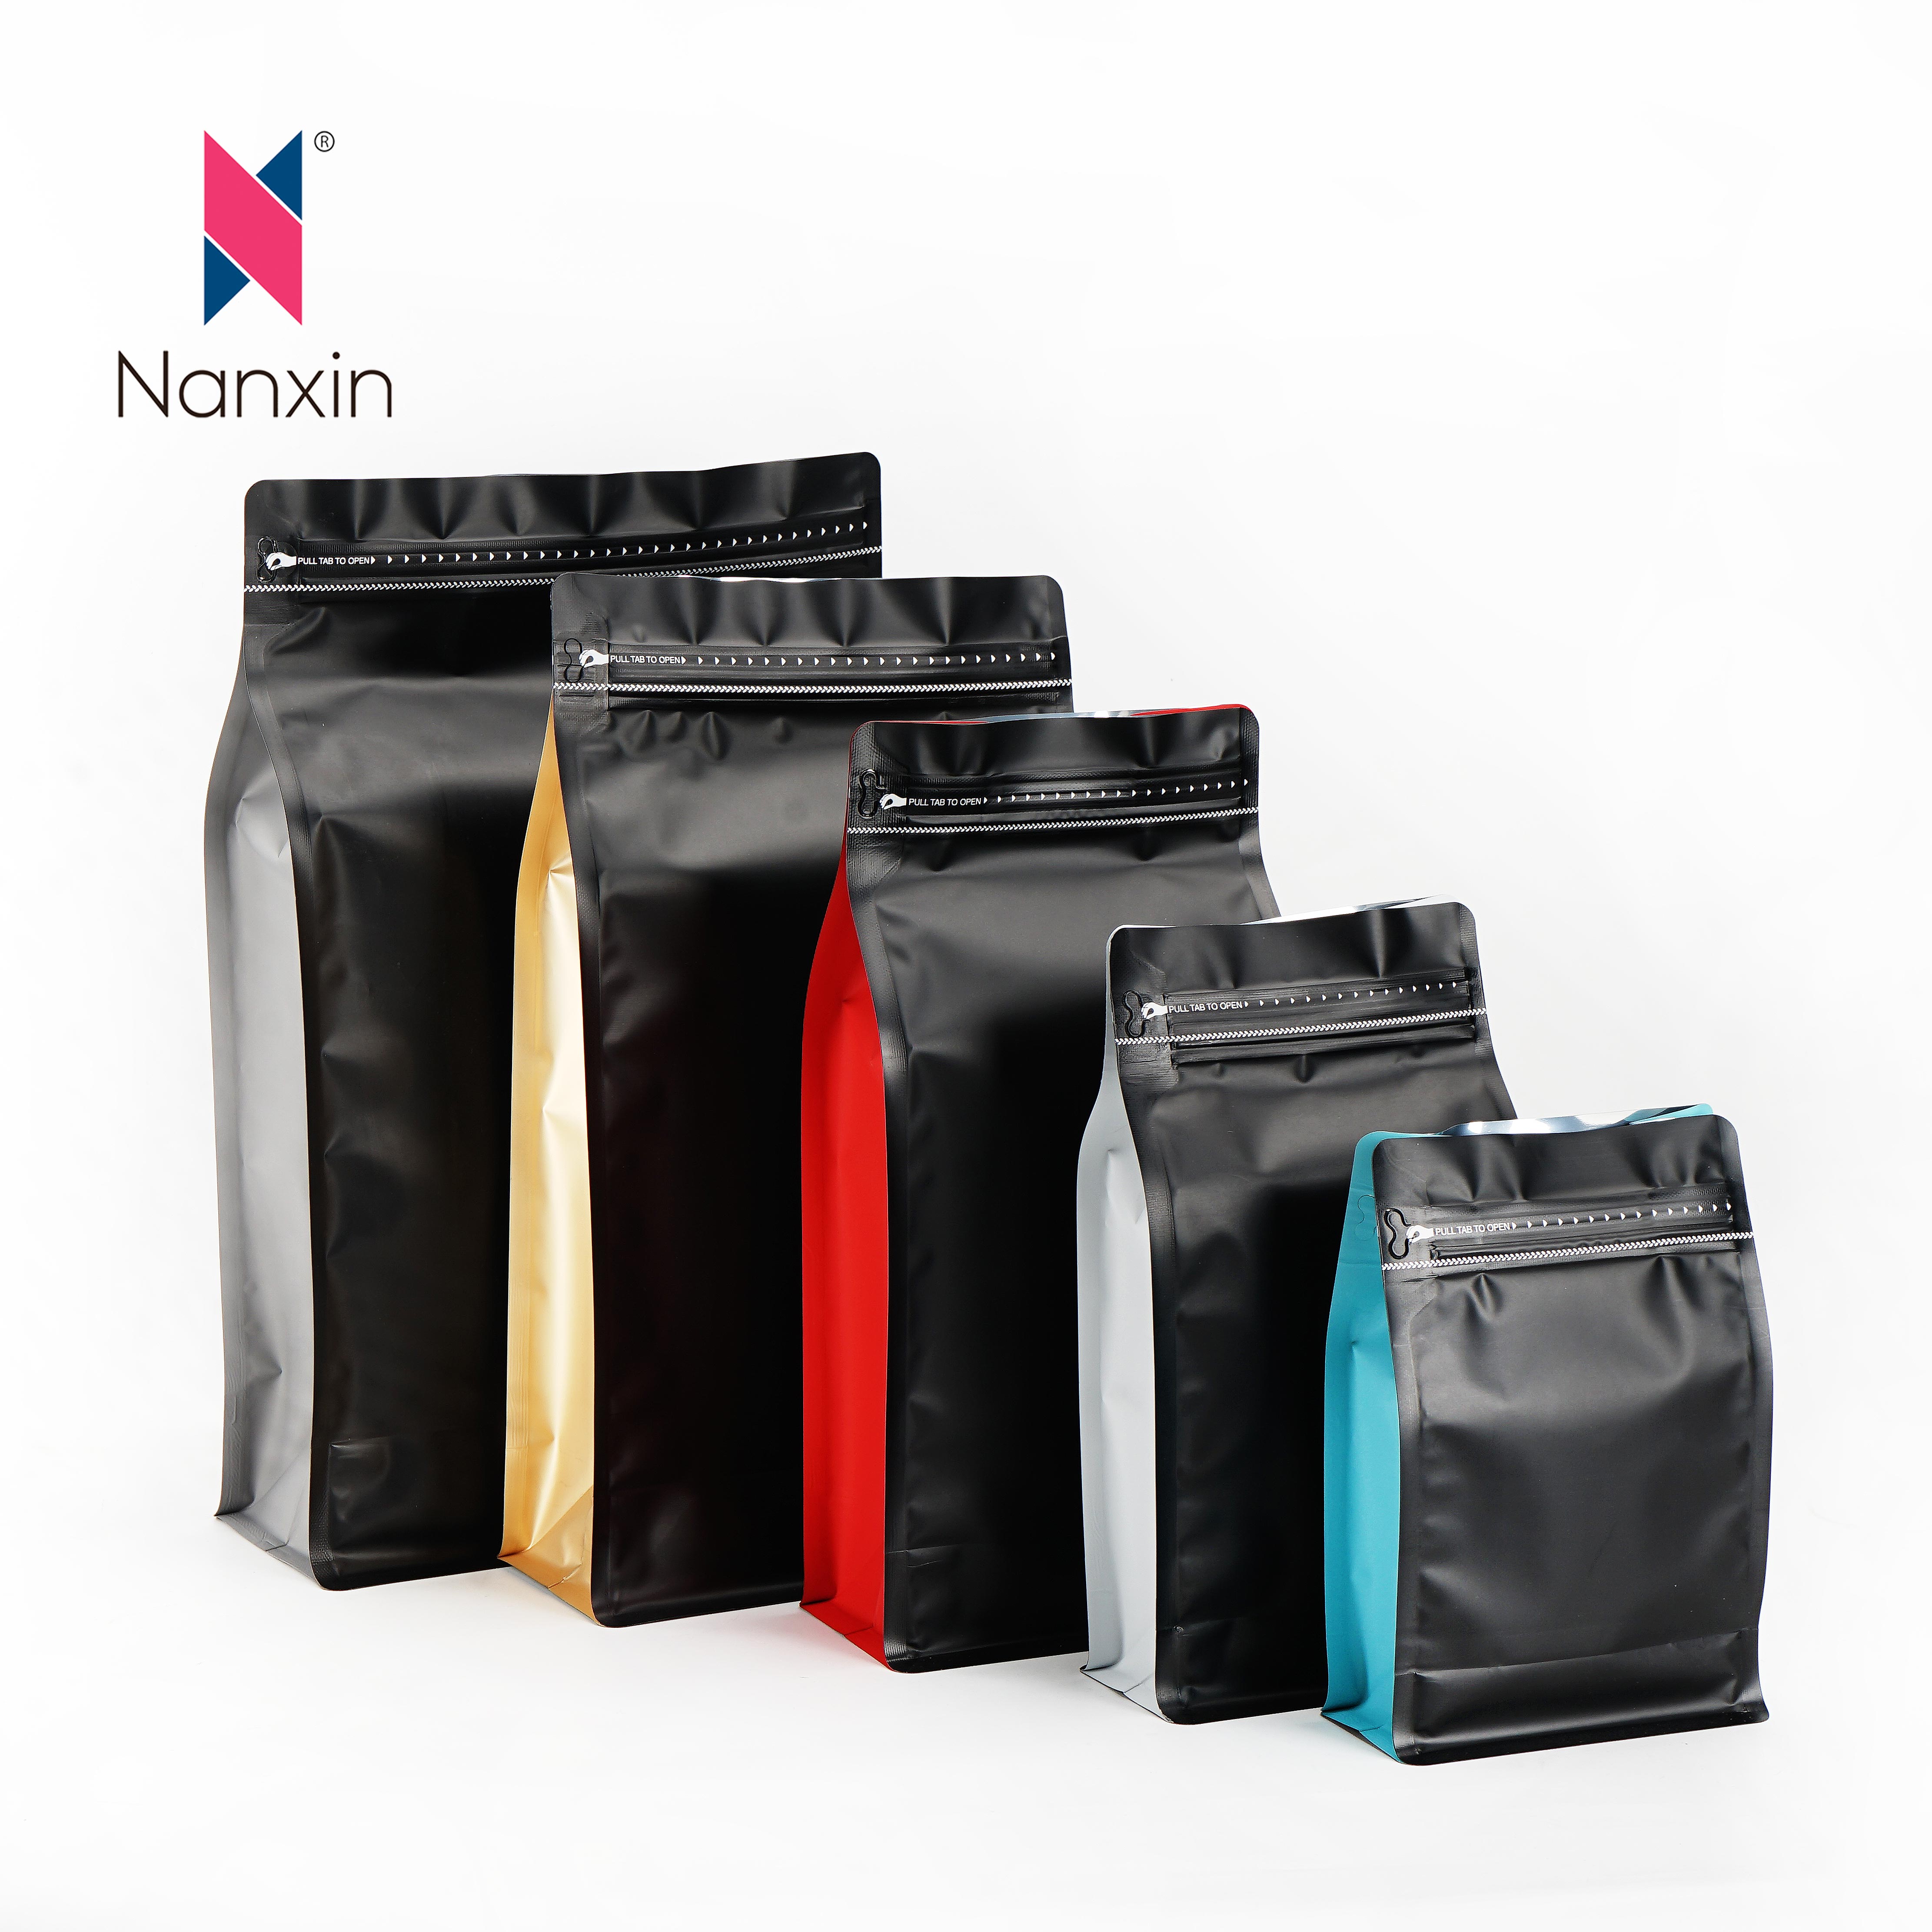 Біорозкладані перероблені індивідуальні пакети для кави 1 кг з крафт-папером з плоским дном і застібкою-блискавкою з клапаном